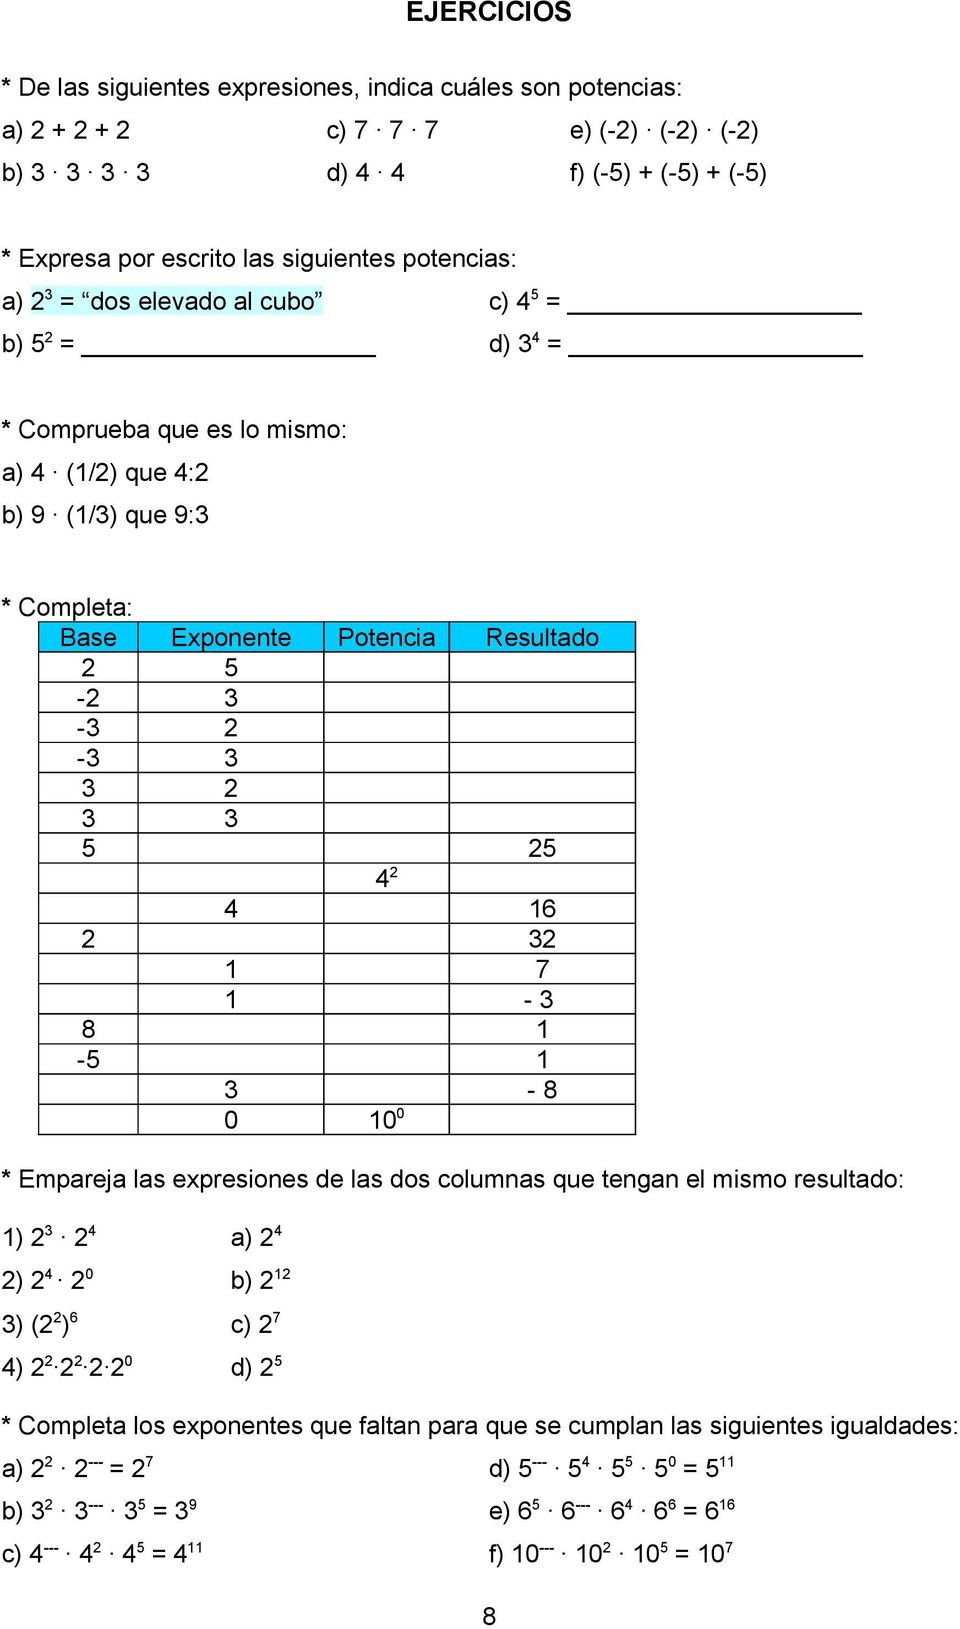 3 5 5 4 4 16 3 1 7 1-3 8 1-5 1 3-8 0 10 0 * Empareja las expresiones de las dos columnas que tengan el mismo resultado: 1) 3 4 ) 4 0 3) ( ) 6 0 4) a) 4 b) 1 c) 7 d) 5 * Completa los